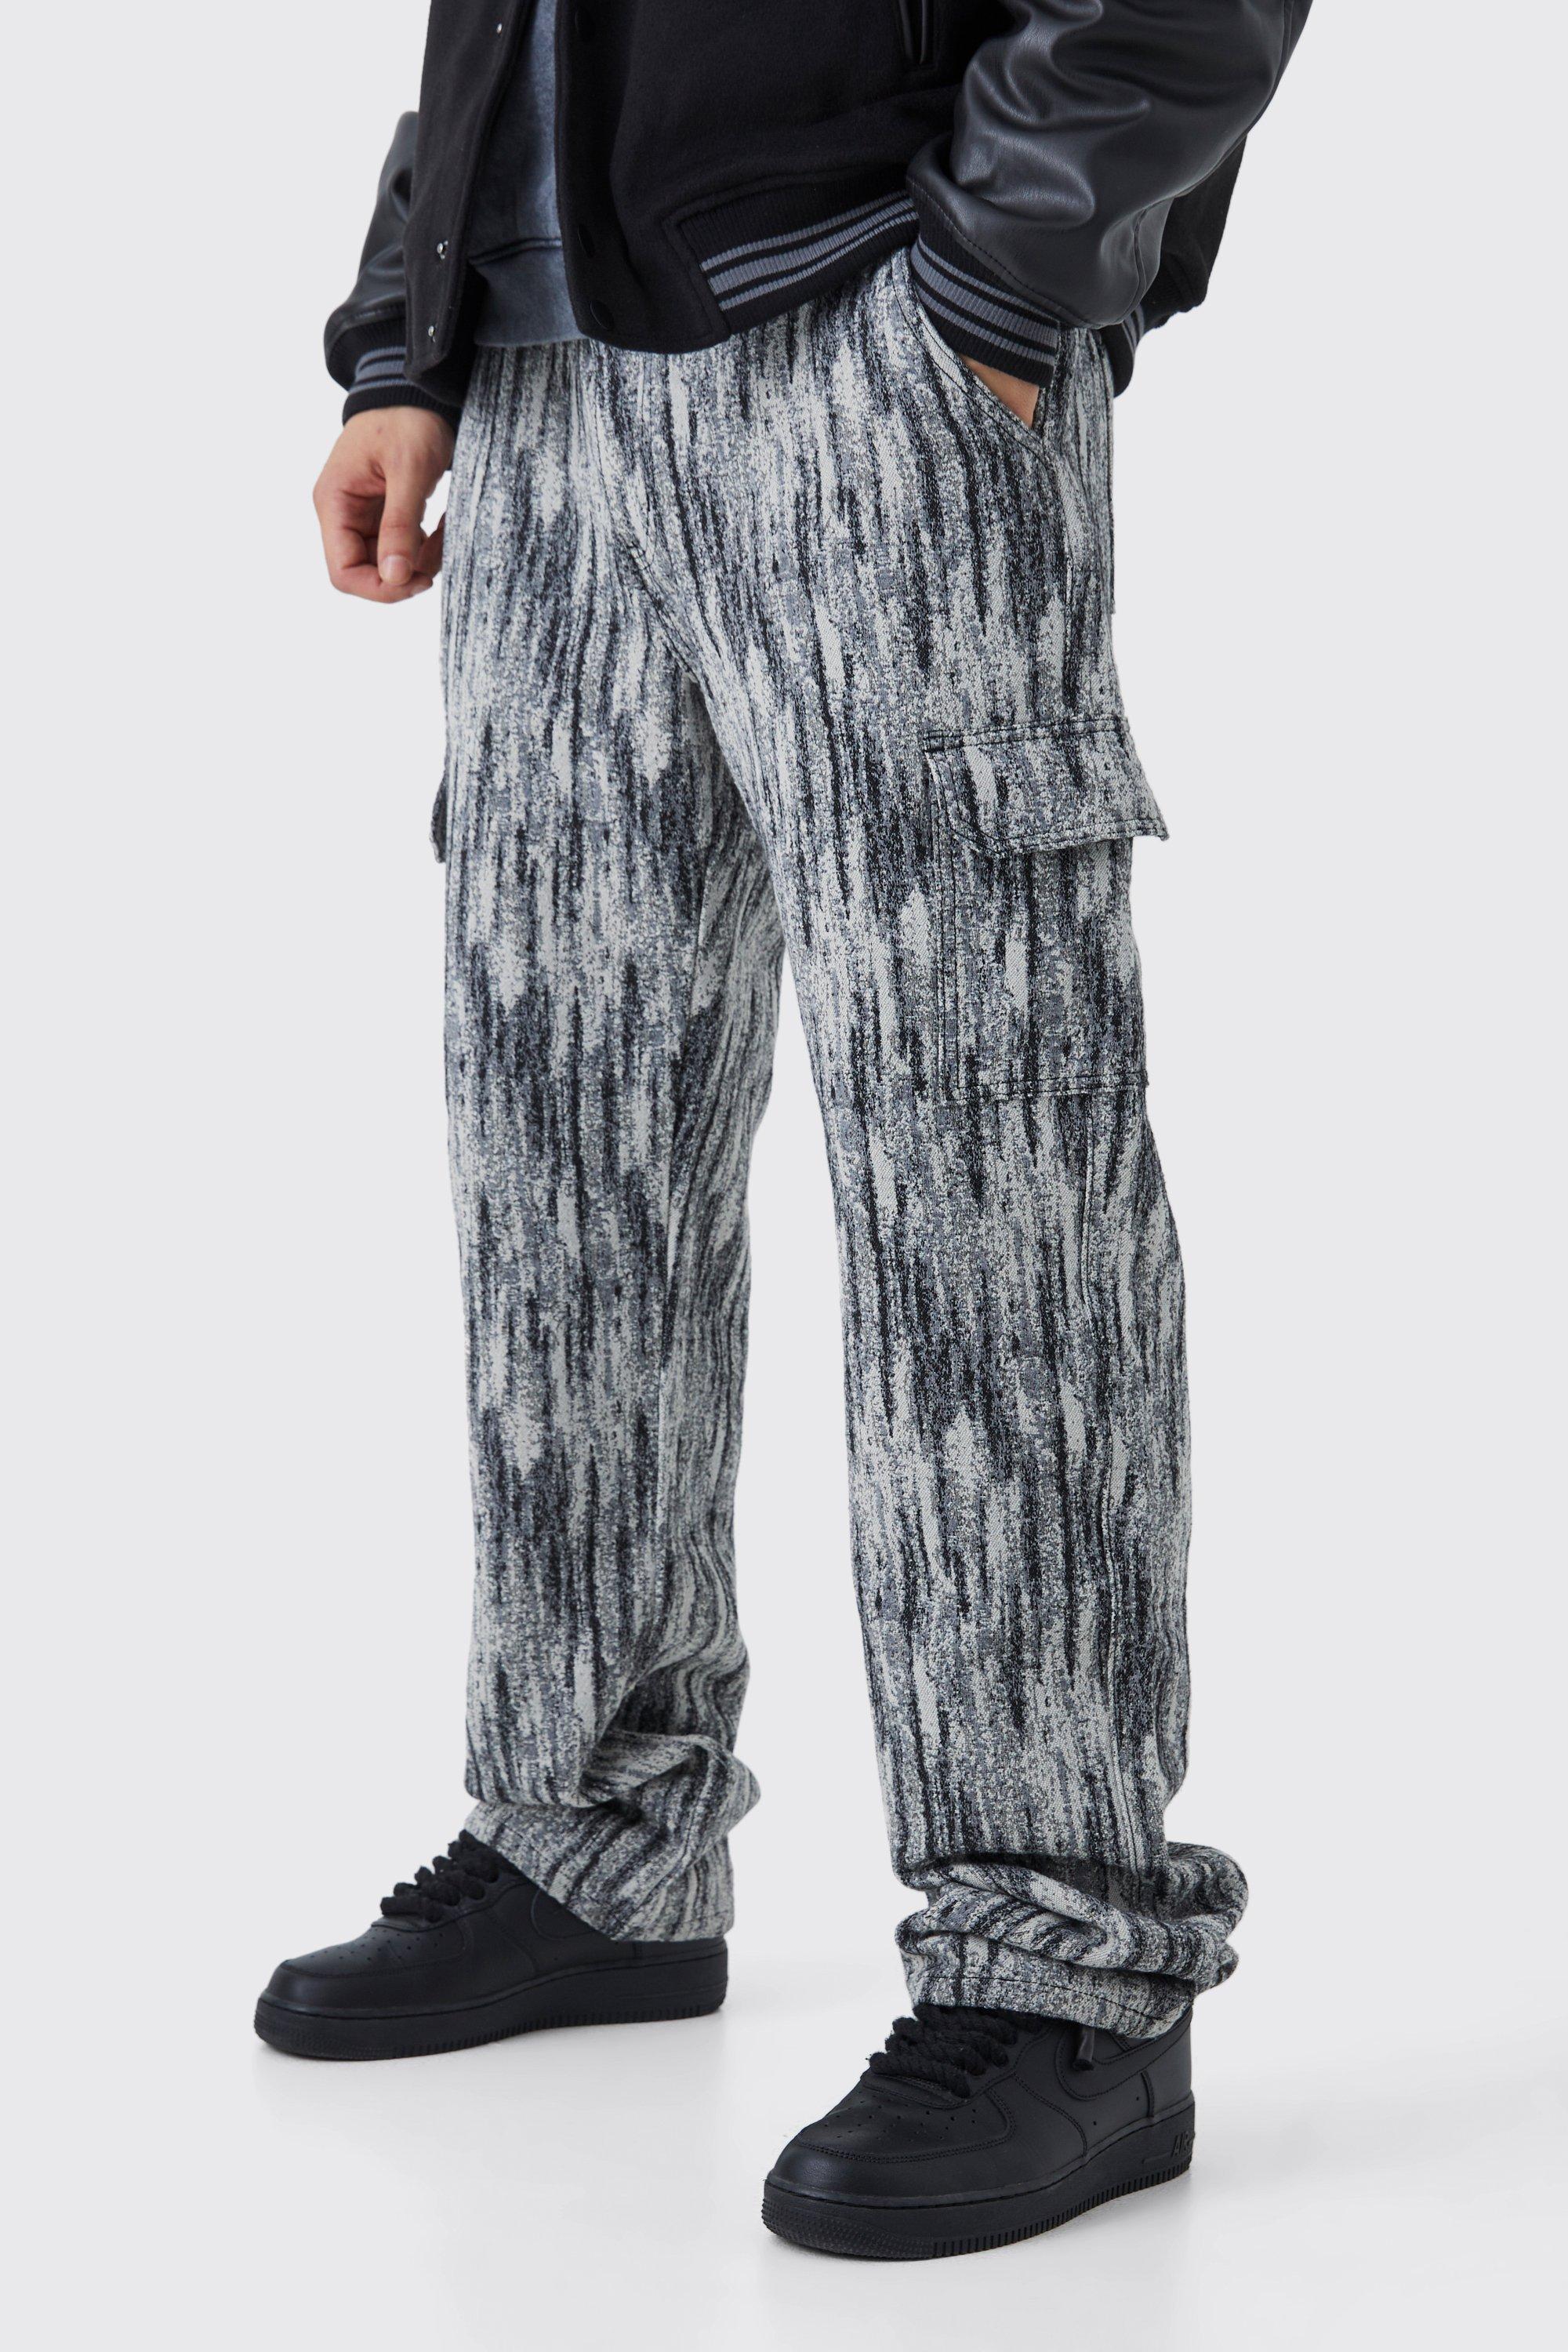 tall - pantalon cargo large à motif tapisserie homme - noir - 32, noir